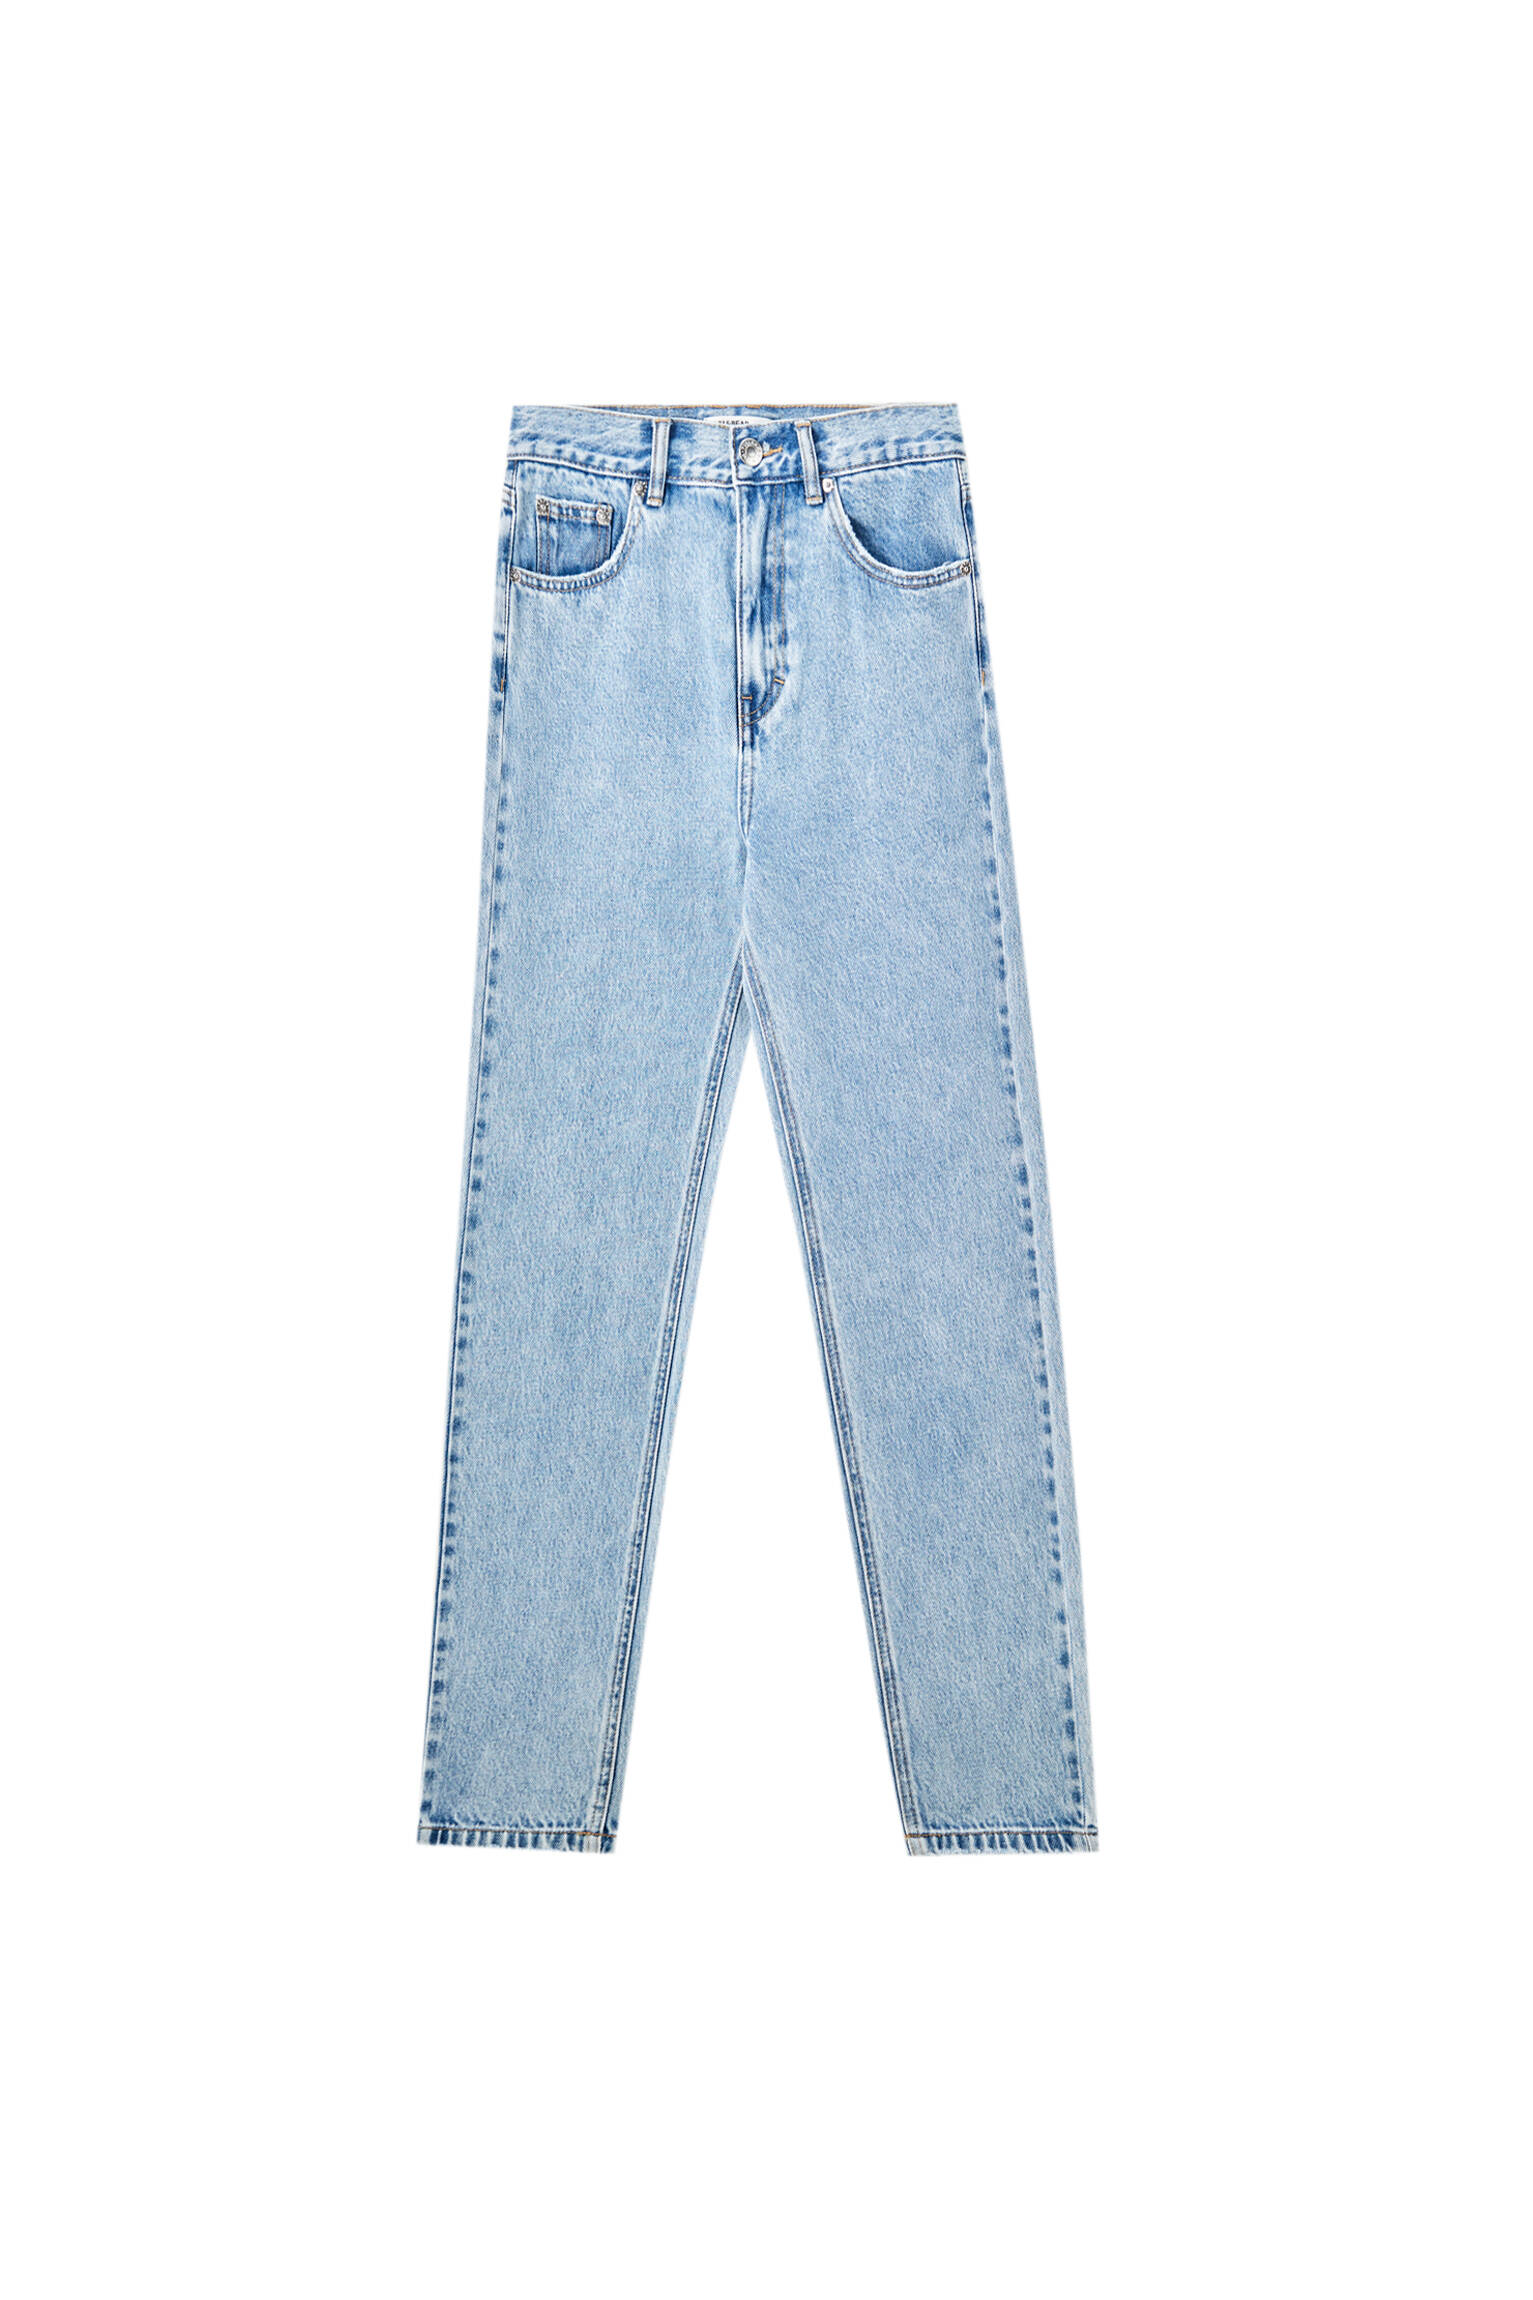 ГОЛУБОЙ Базовые джинсы mom fit - органический хлопок (не менее 50%) Pull & Bear